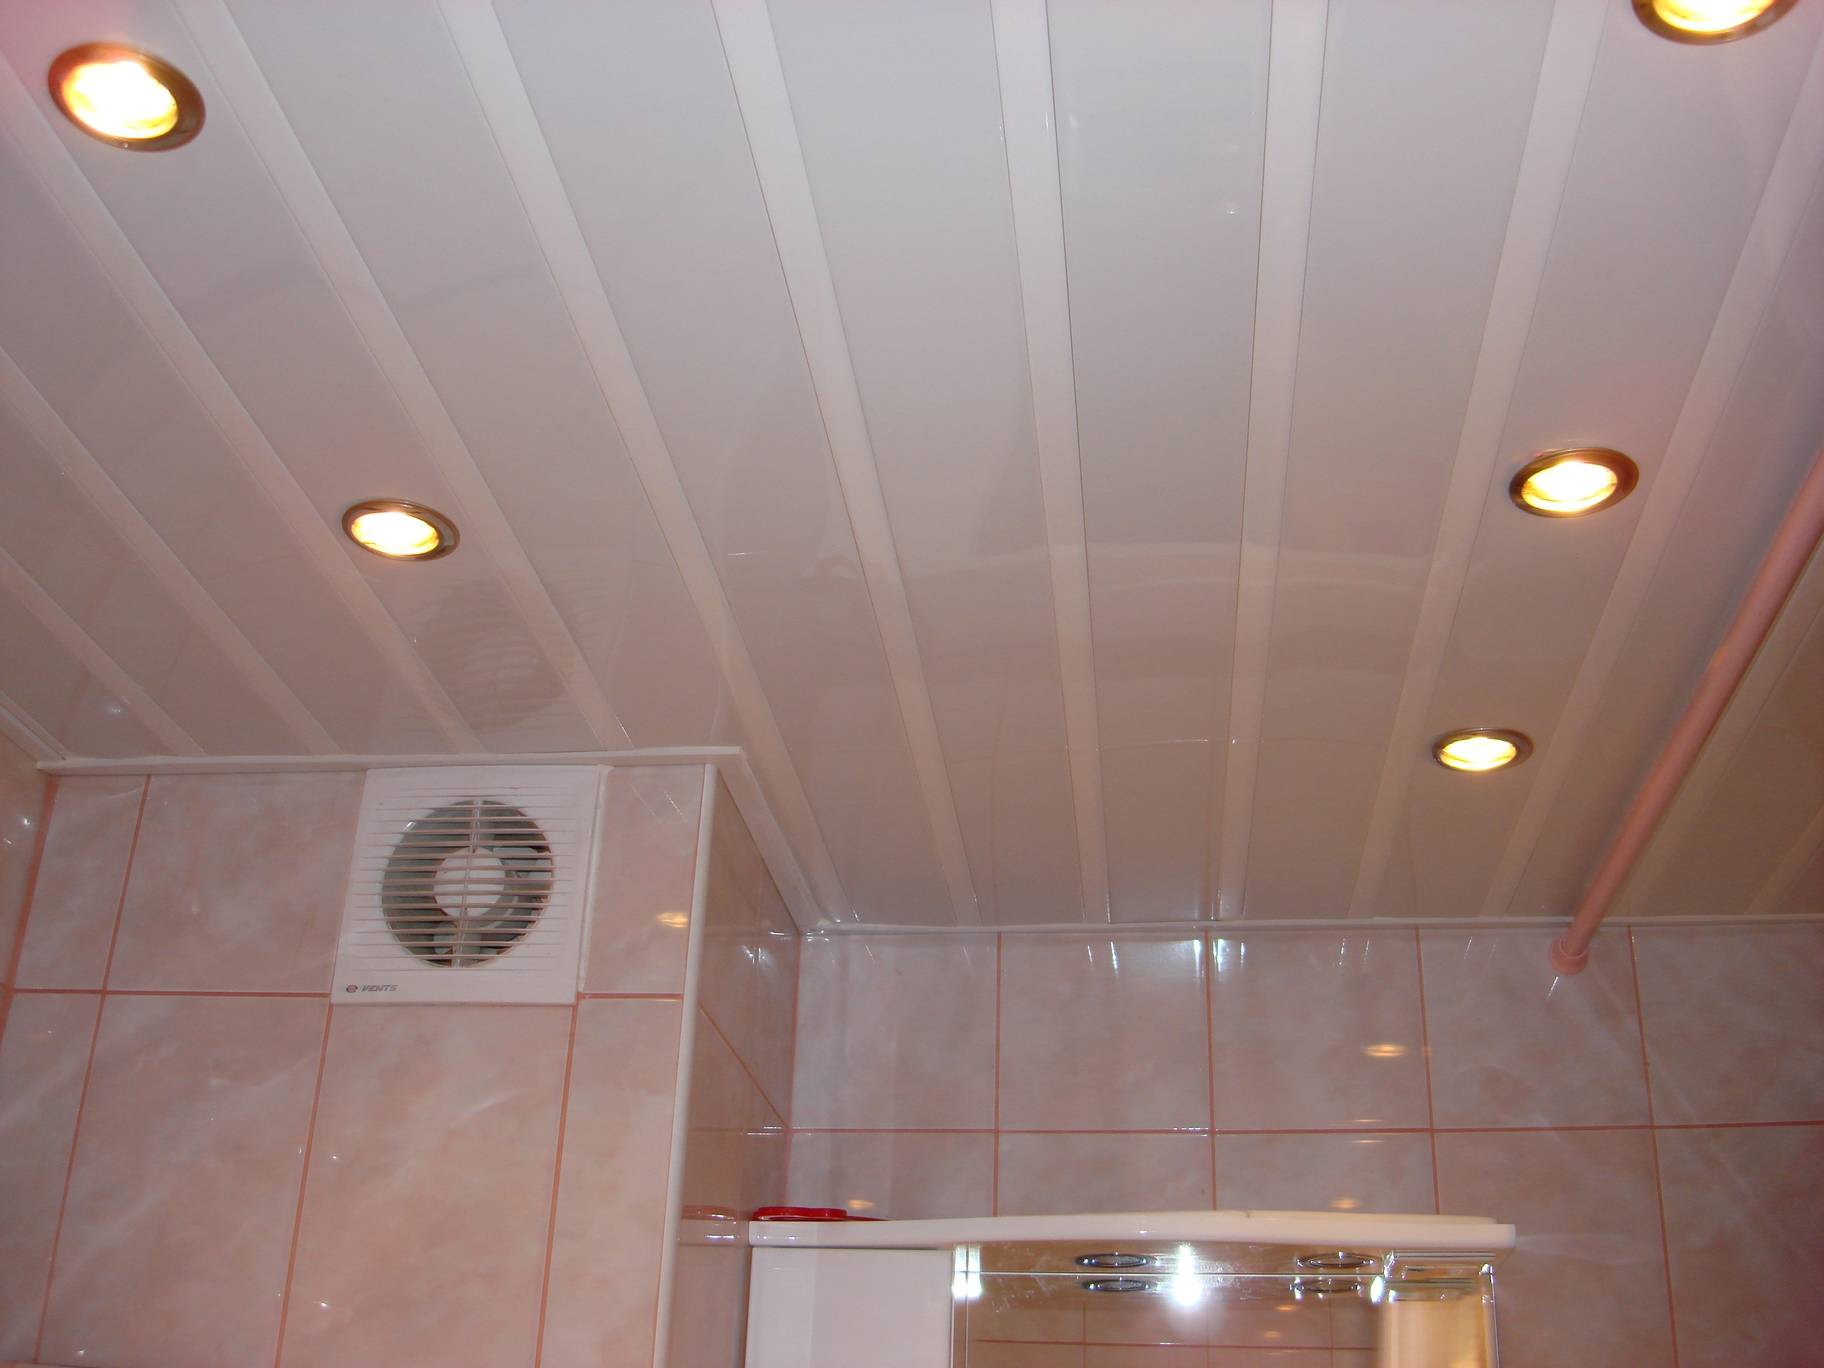 Потолок в ванной комнате: какой выбрать (фото)